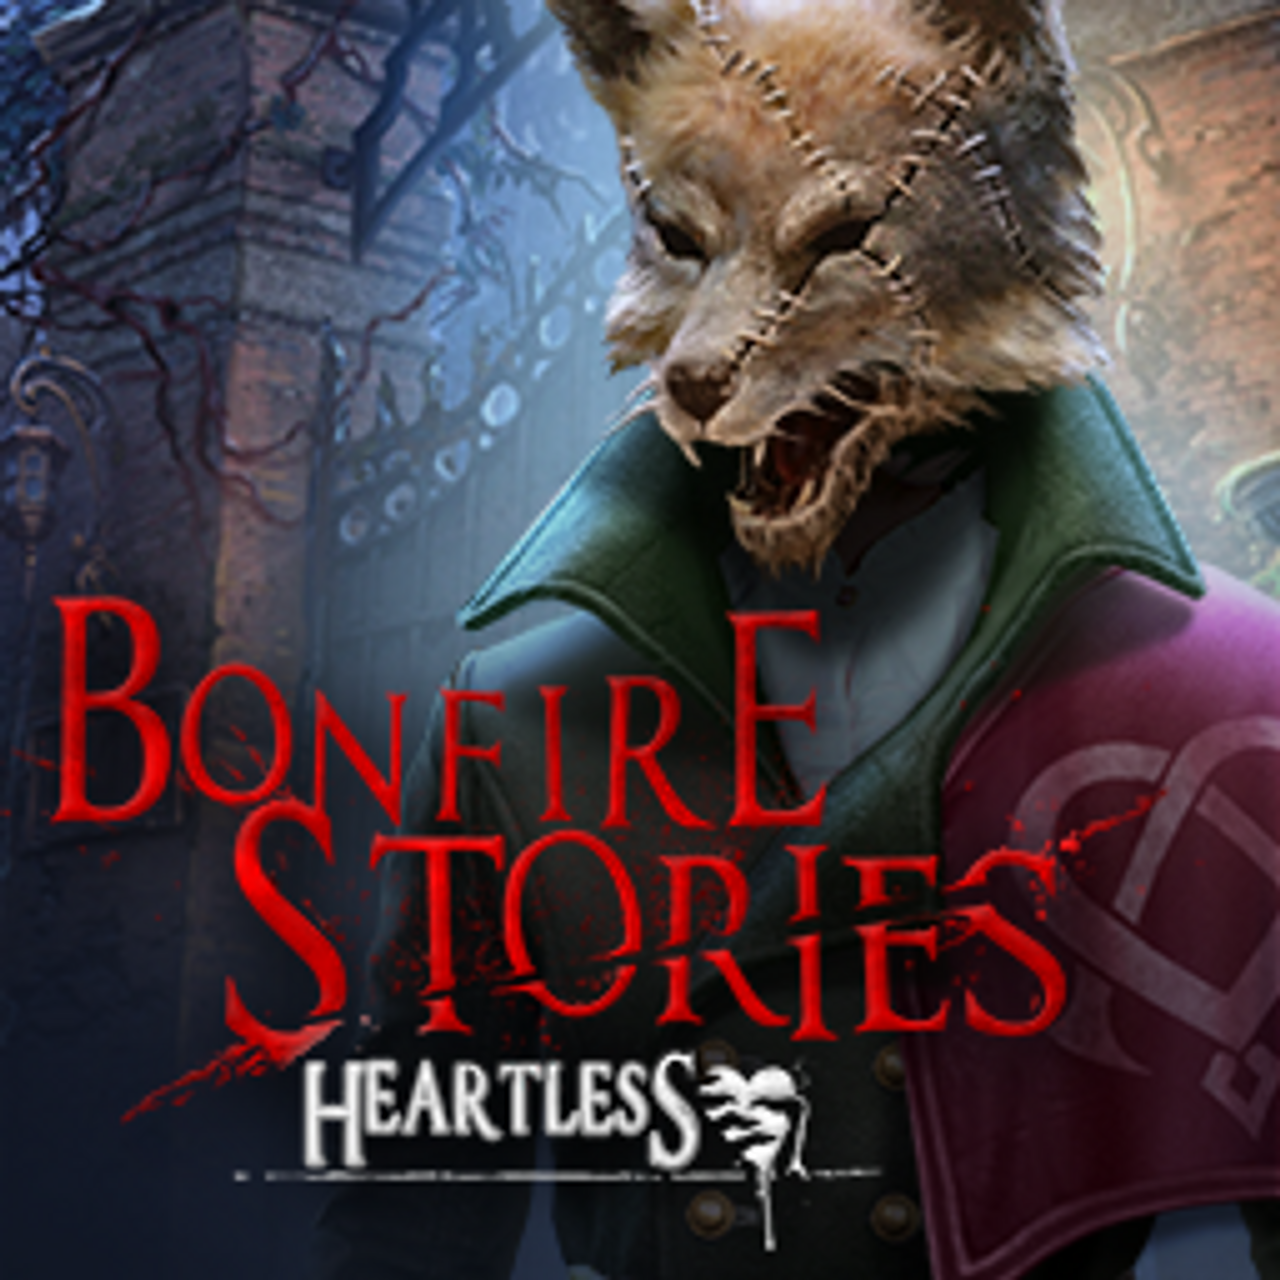 Bonfire Stories: Heartless